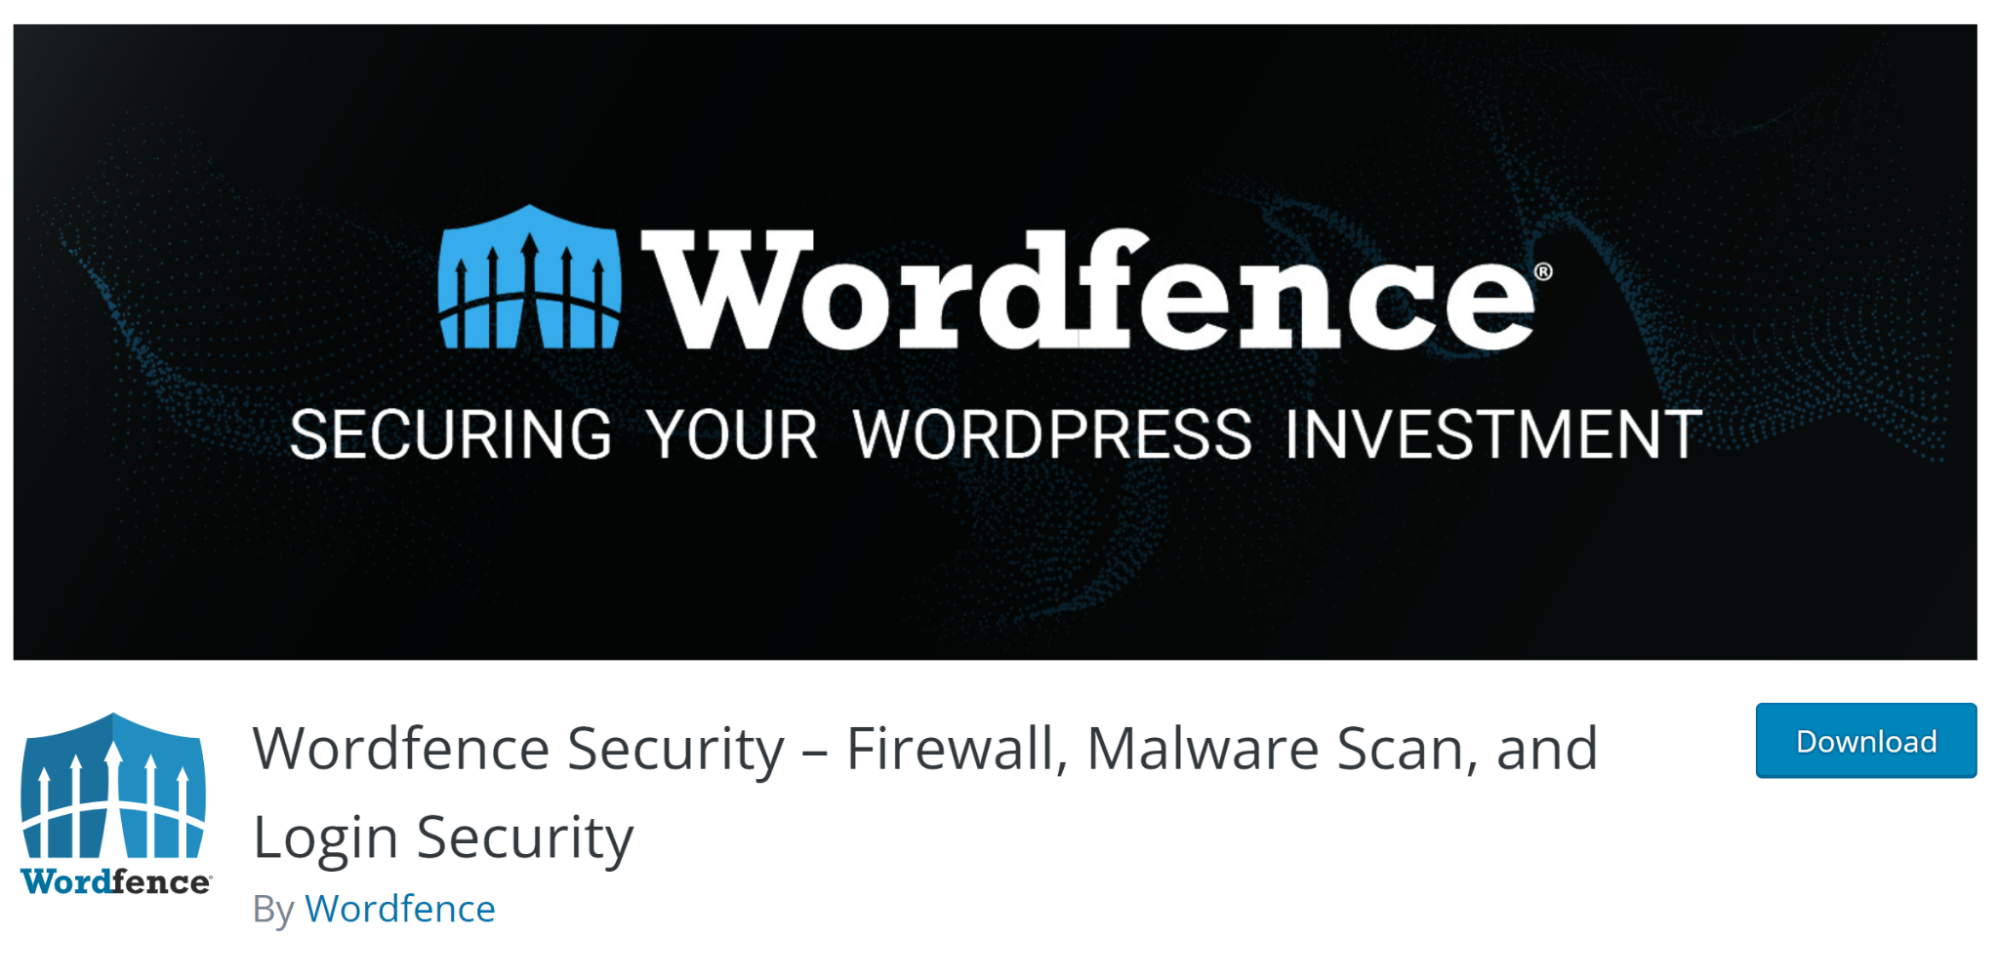 Страница Wordfence Security на wordpress.org